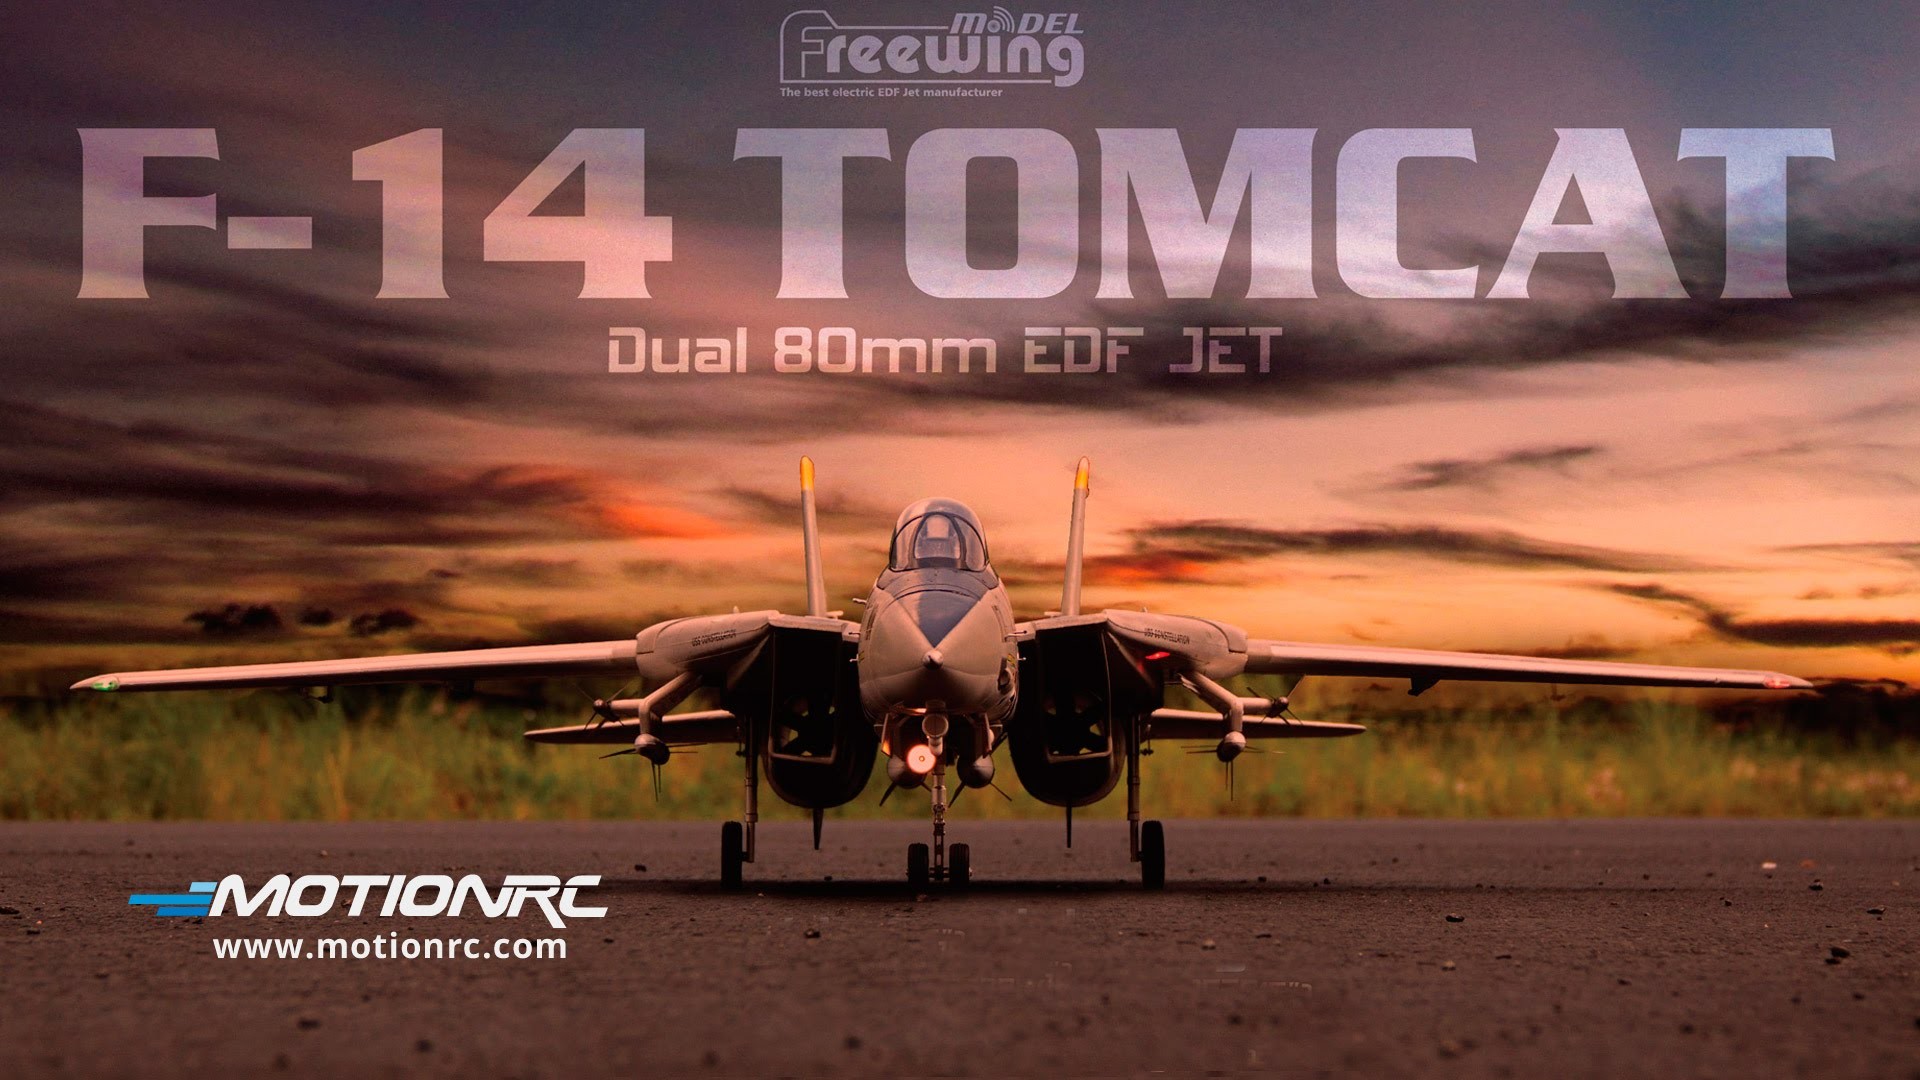 19x1080 Freewing F 14 Tomcat Twin 80mm Edf Jet F 14 Tomcat Wallpaper Hd 19x1080 Wallpaper Teahub Io